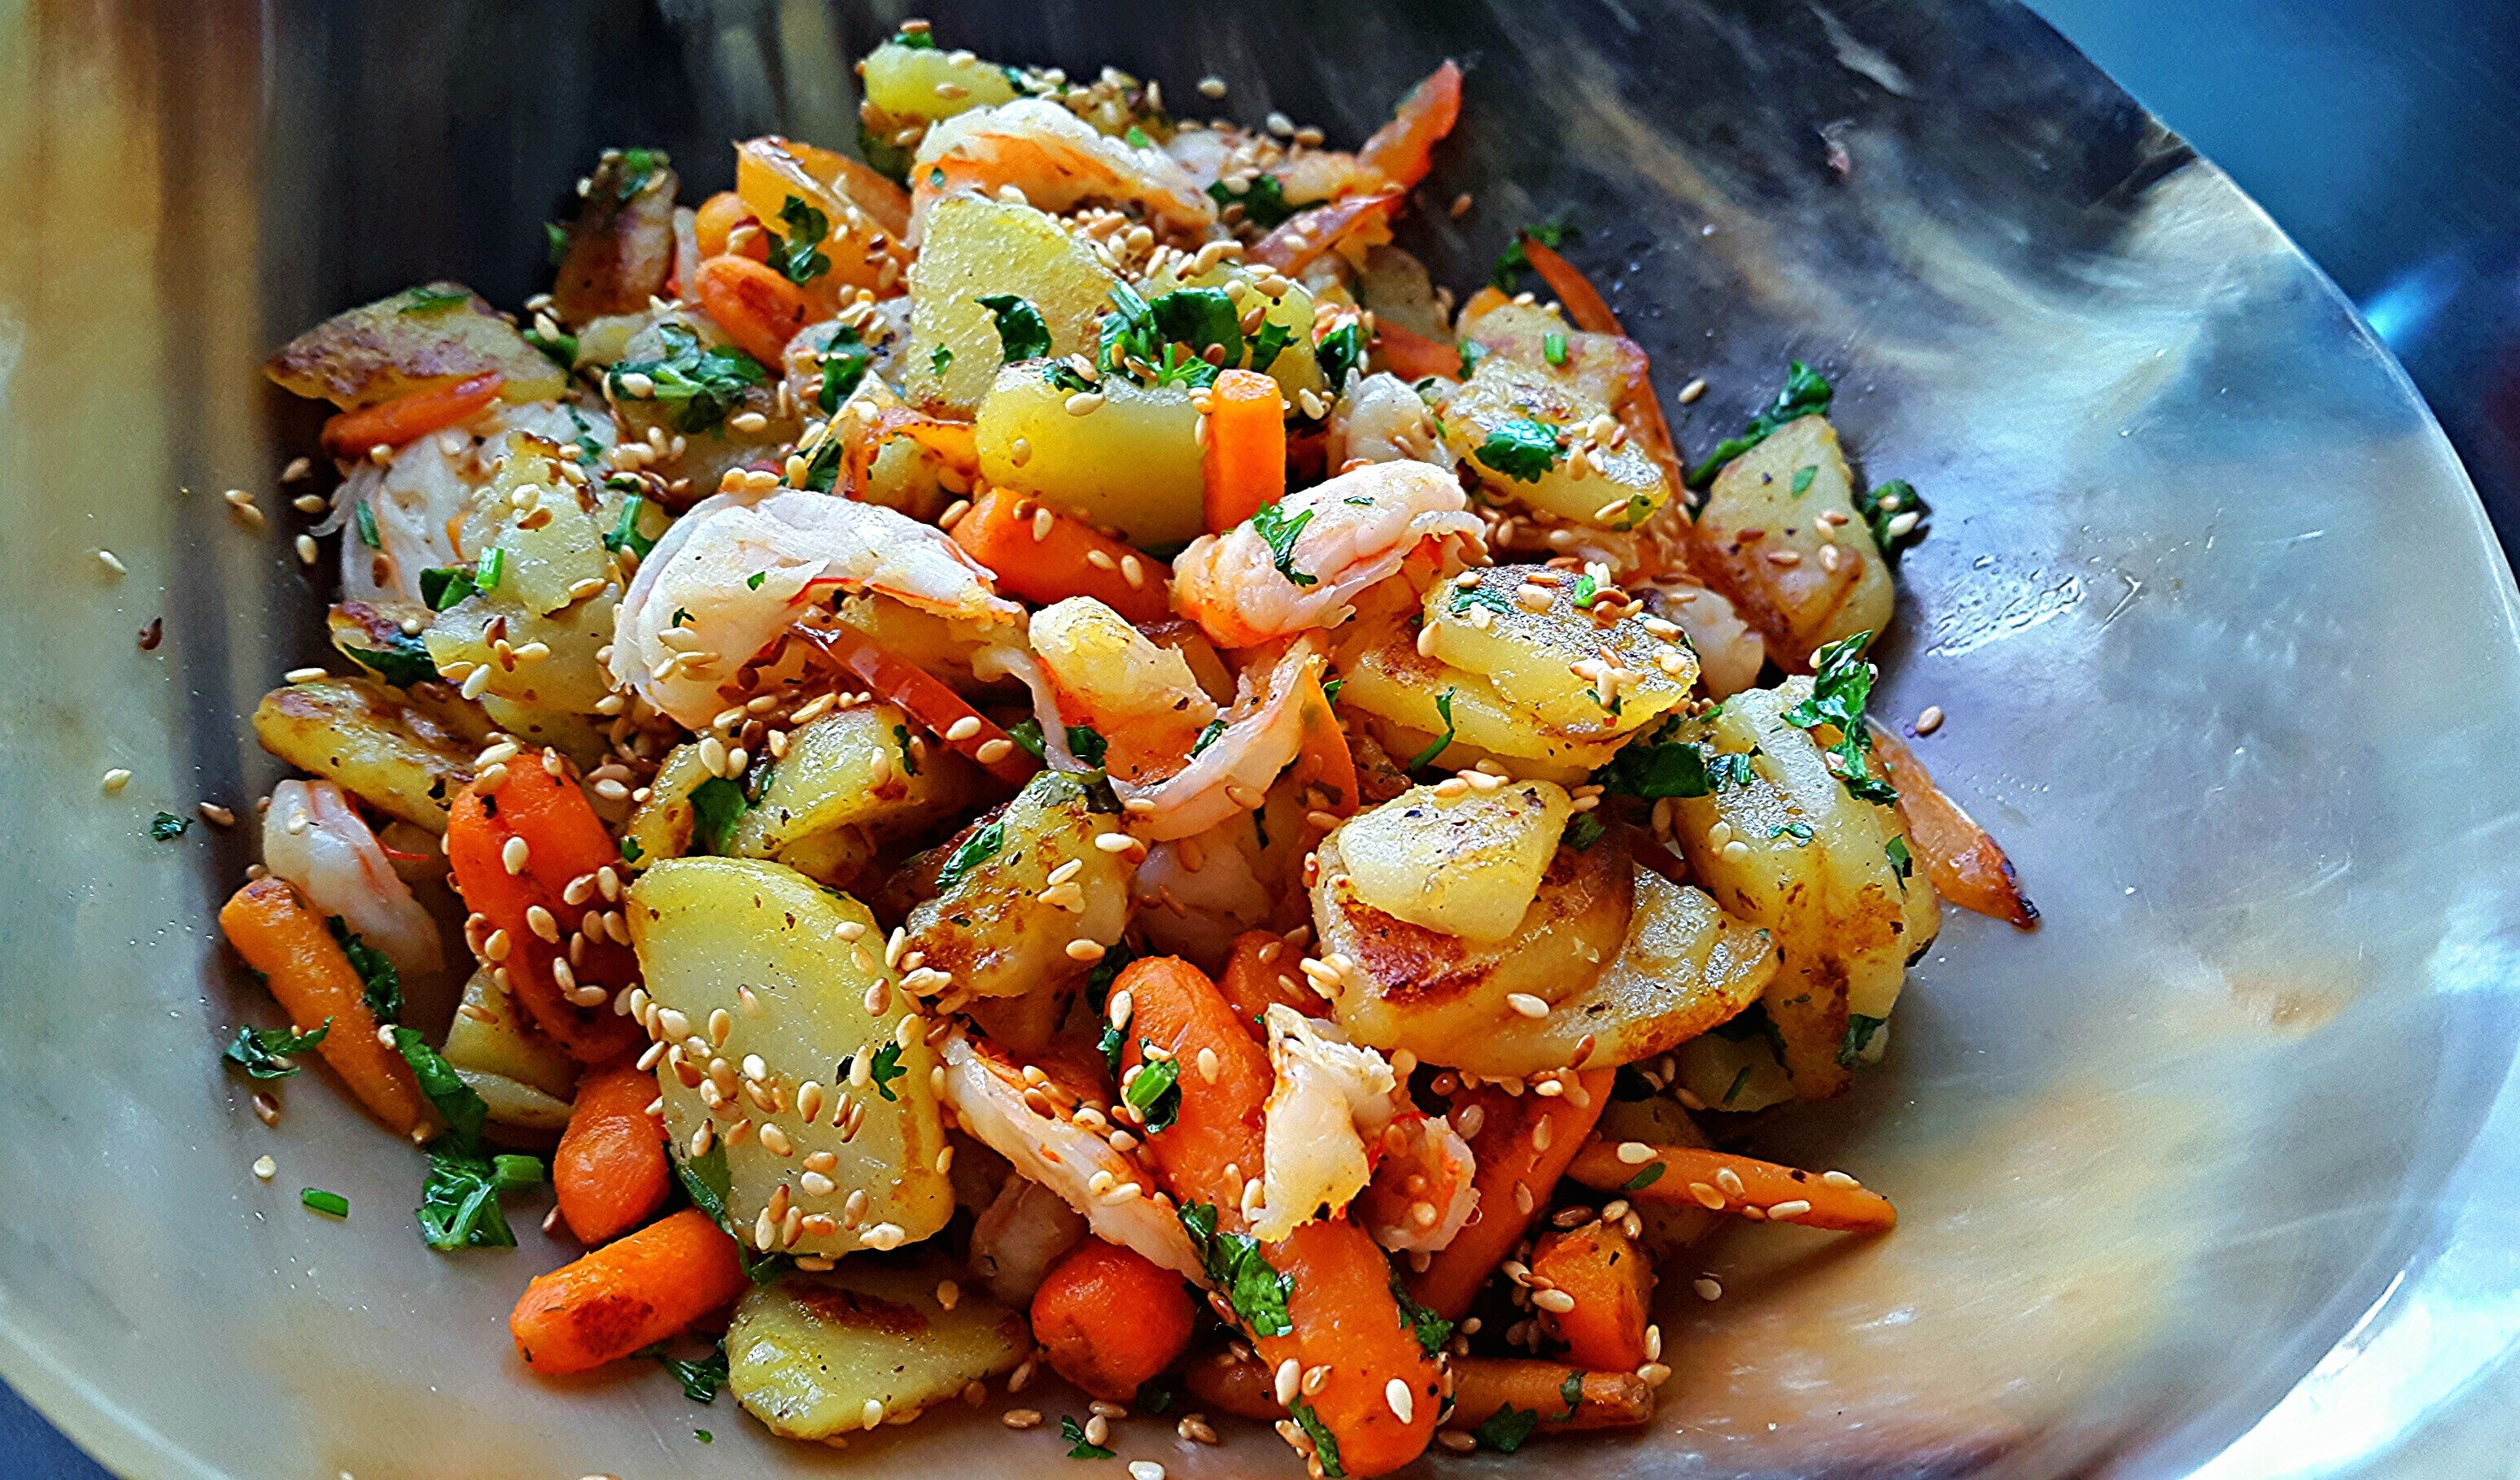 Овощи по азиатски рецепт. Овощи по Азиатски. Креветки с картошкой. Картофель с креветками. Овощи по Азиатски с креветками.